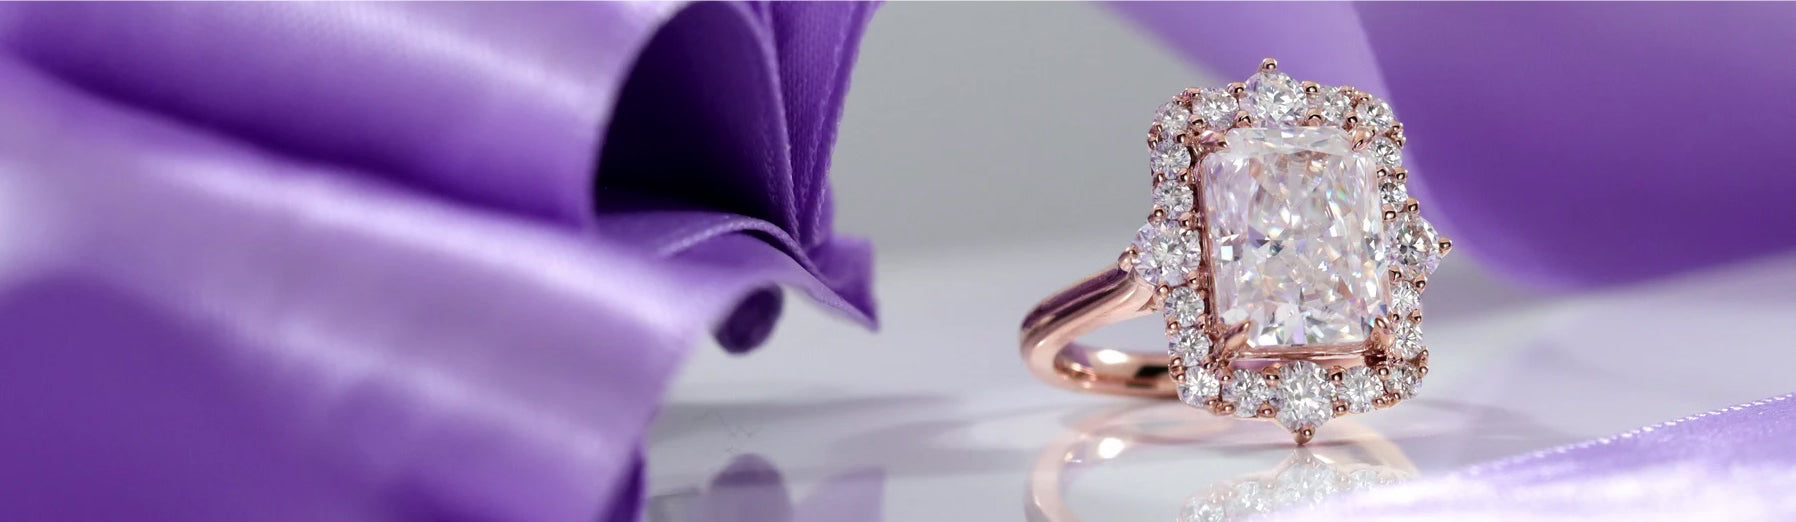 custom design your own designer engagement ring at Quorri 